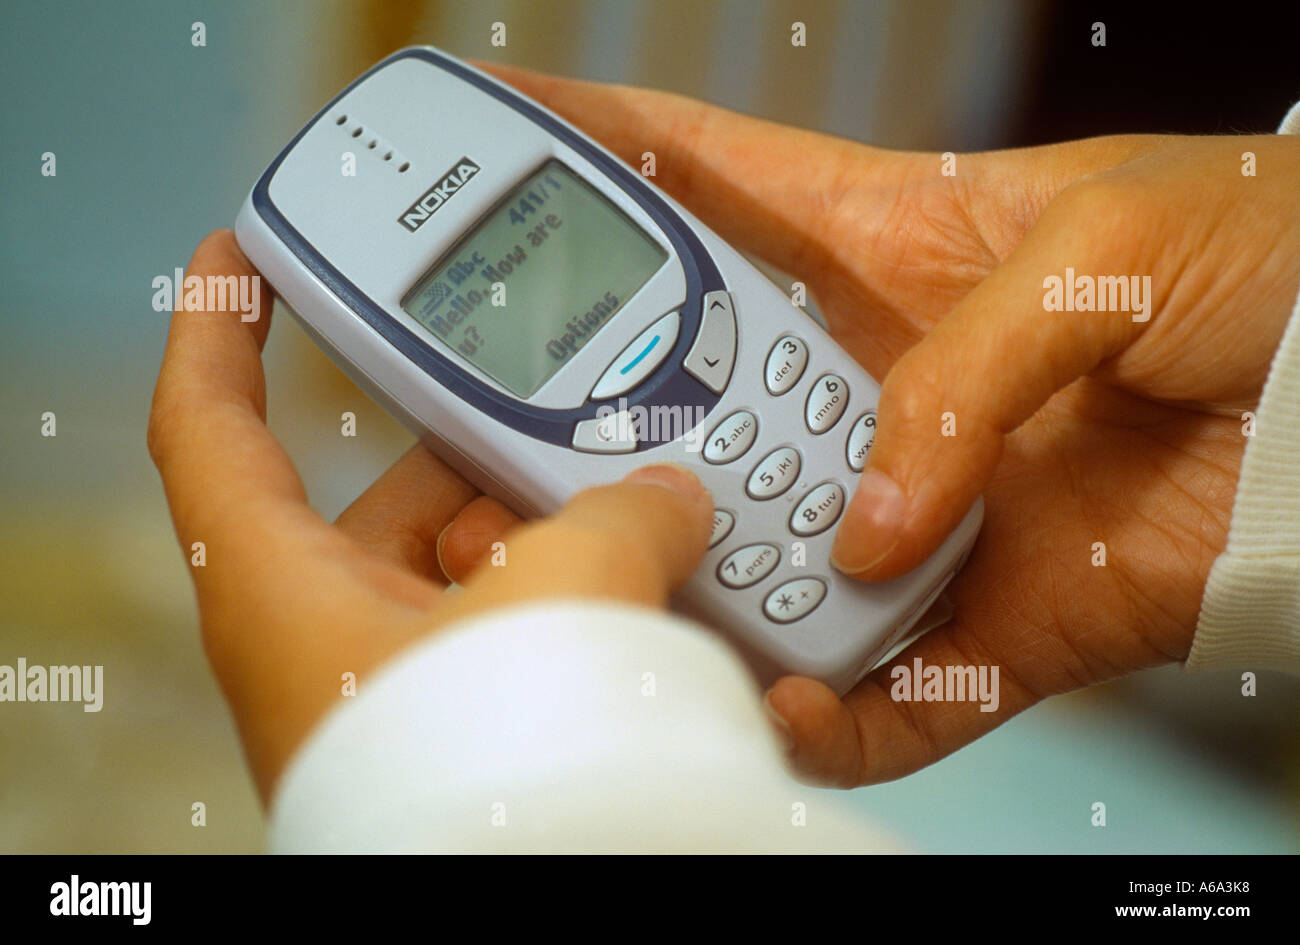 L'envoi de message texte sur téléphone mobile Nokia 3310 Banque D'Images